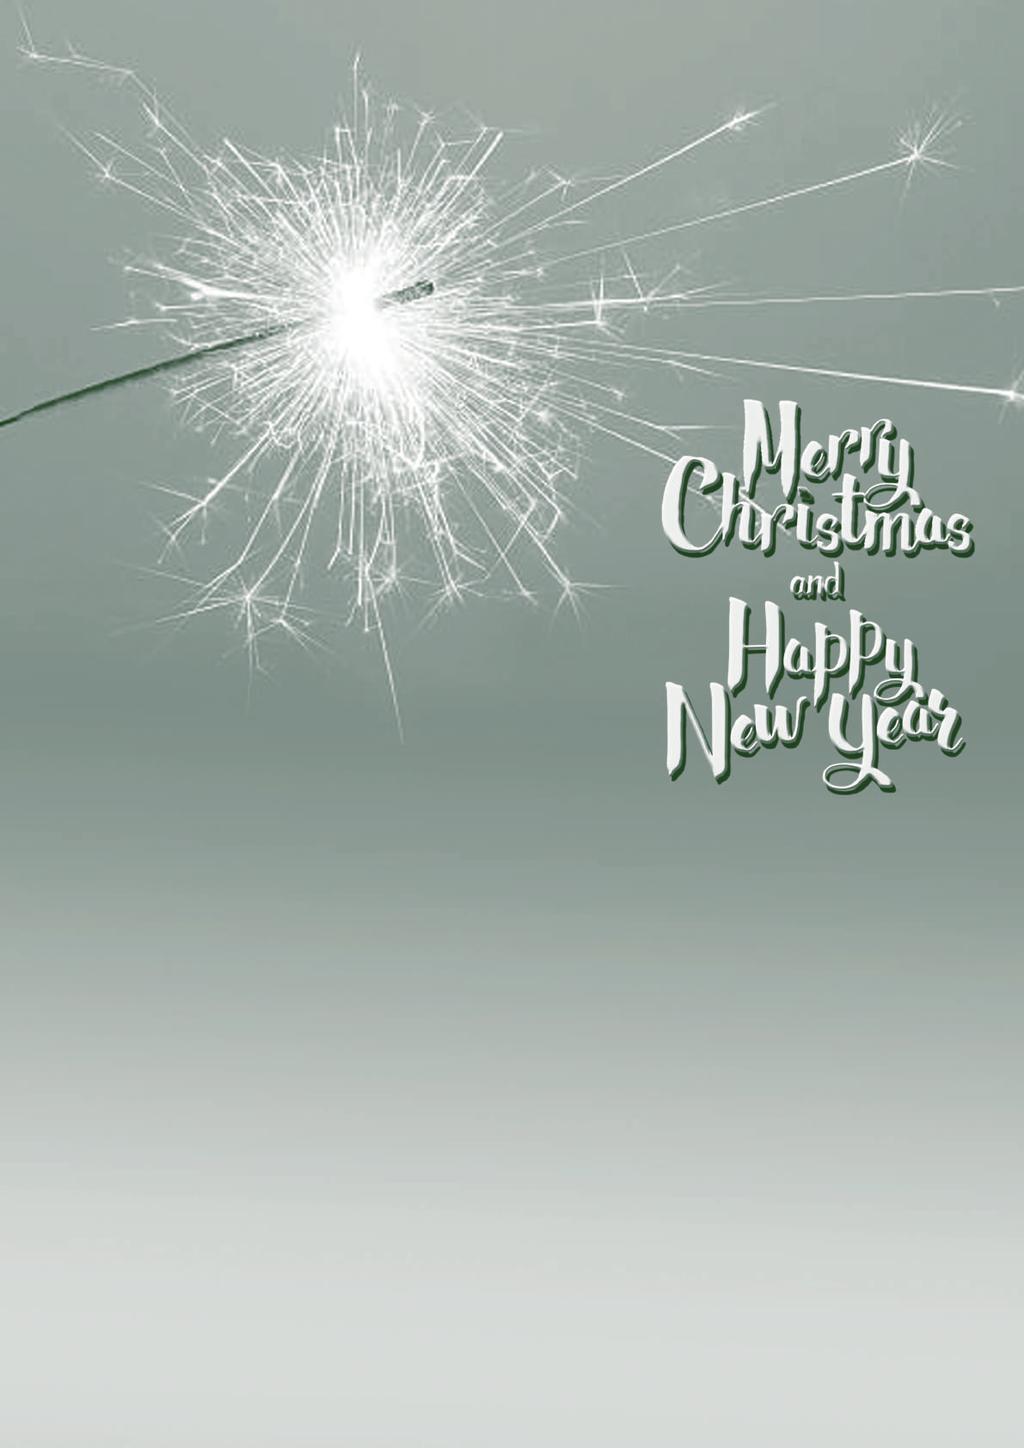 Liebe Mitglieder, liebe Mieter, die bevorstehenden Feiertage zum Weihnachtsfest und zum Jahreswechsel nehmen wir zum Anlass, allen Mitgliedern und Mietern die besten Wünsche zu übermitteln.